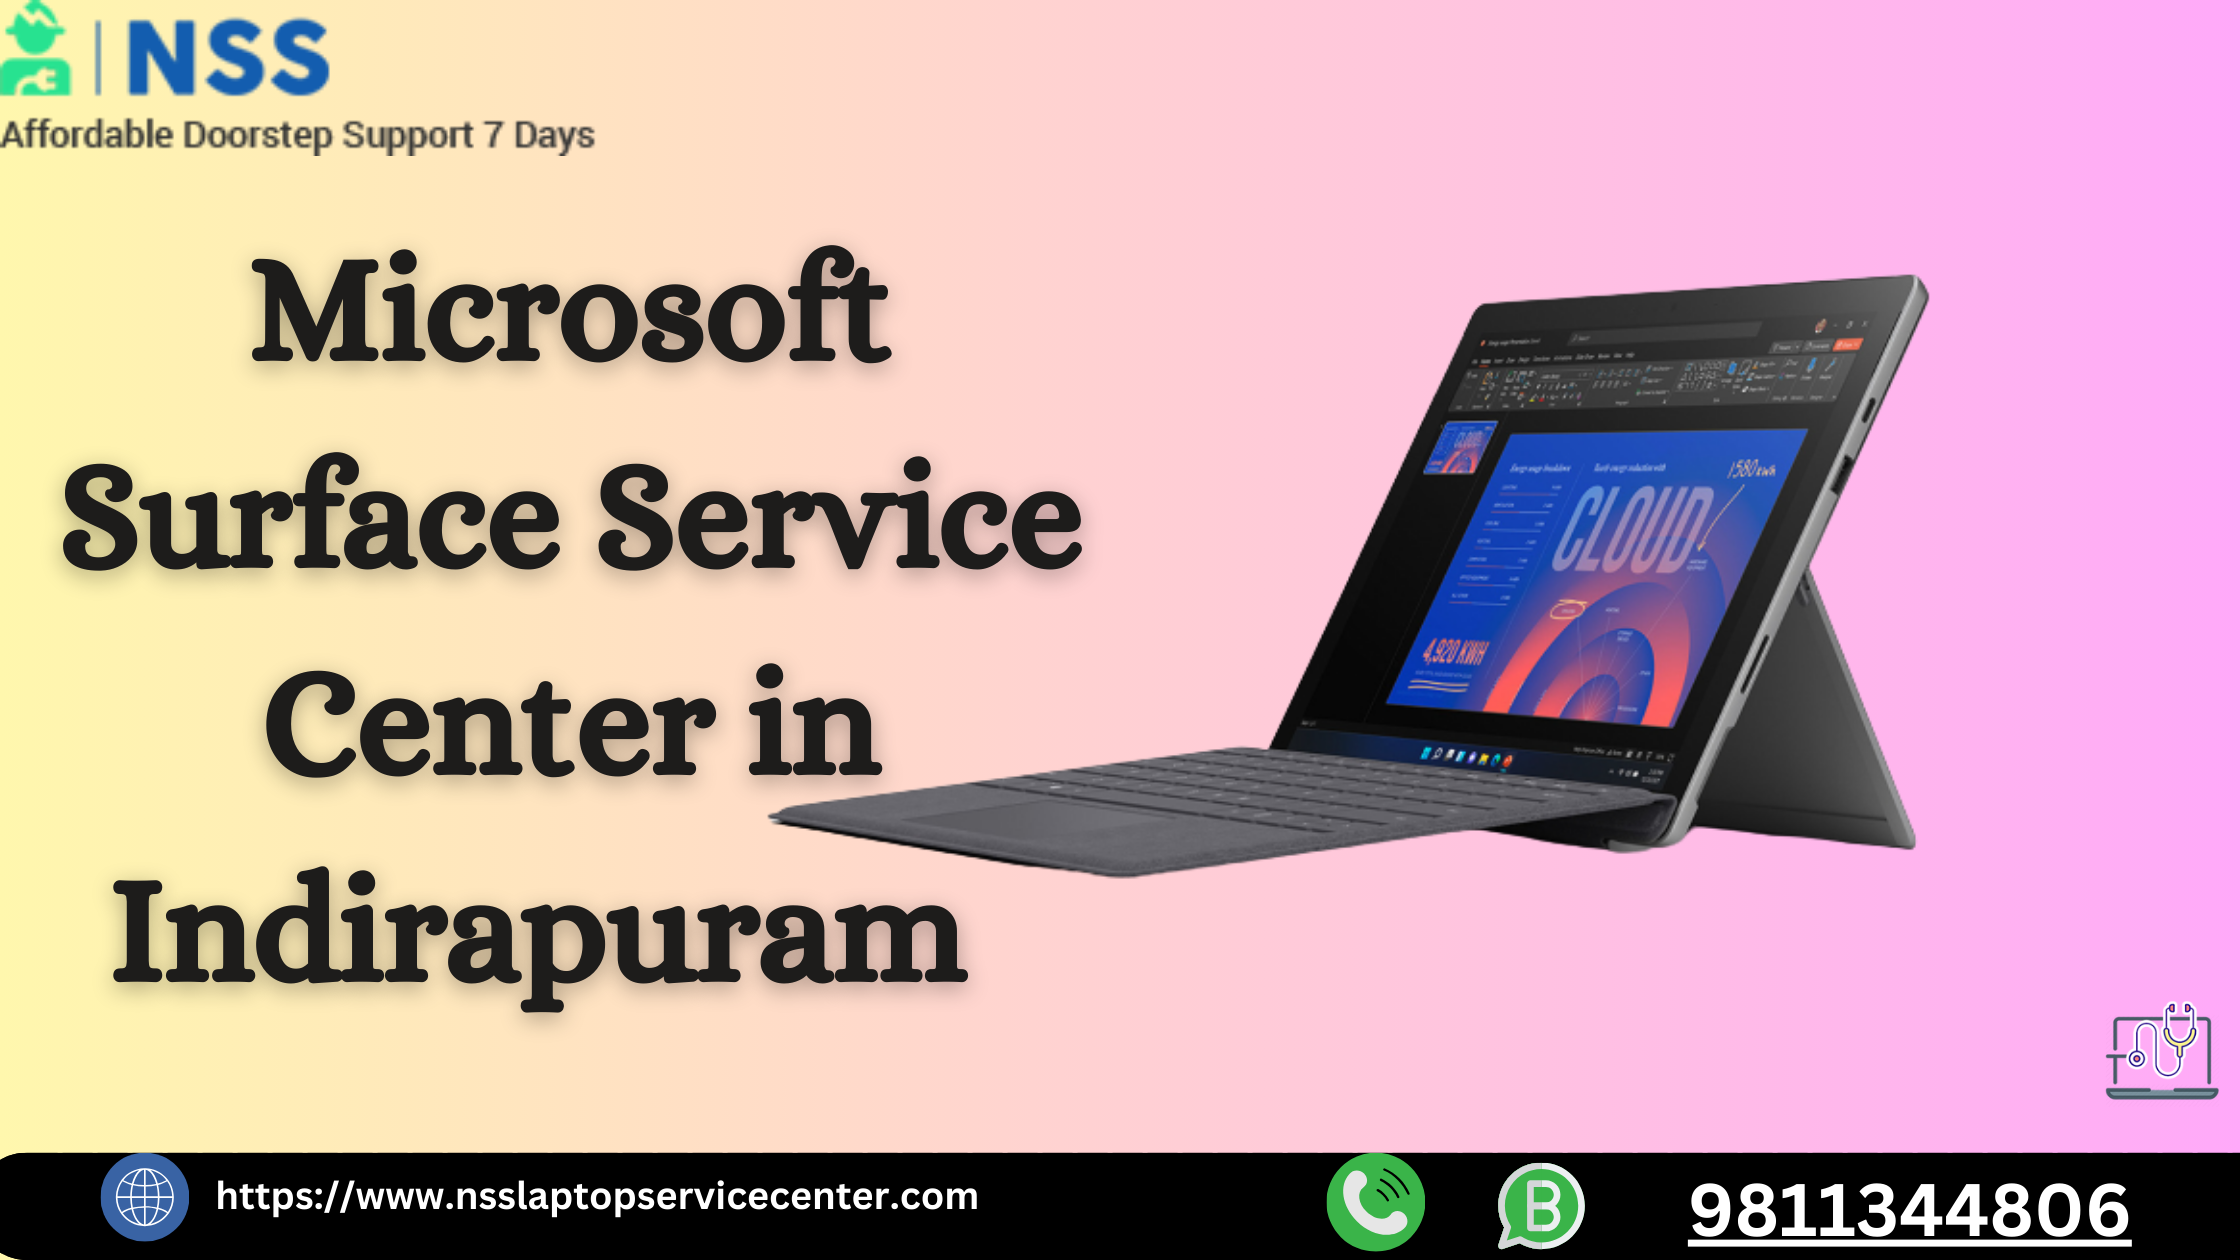 Microsoft Surface Service Center in Indirapuram Near Ghaziabad